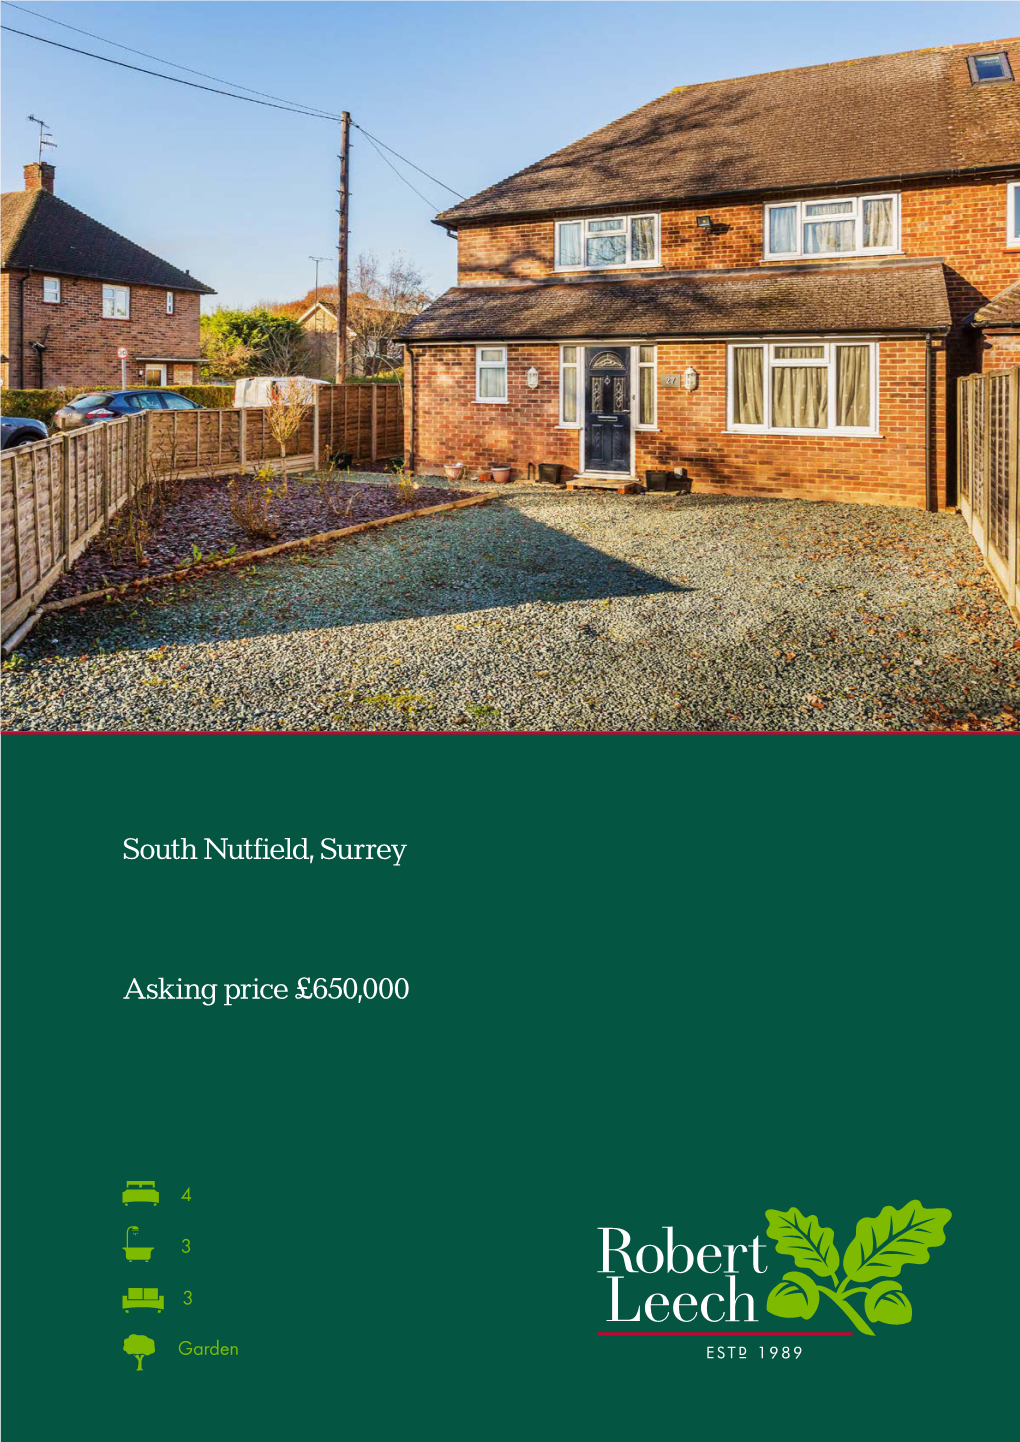 South Nutfield, Surrey Asking Price £650,000